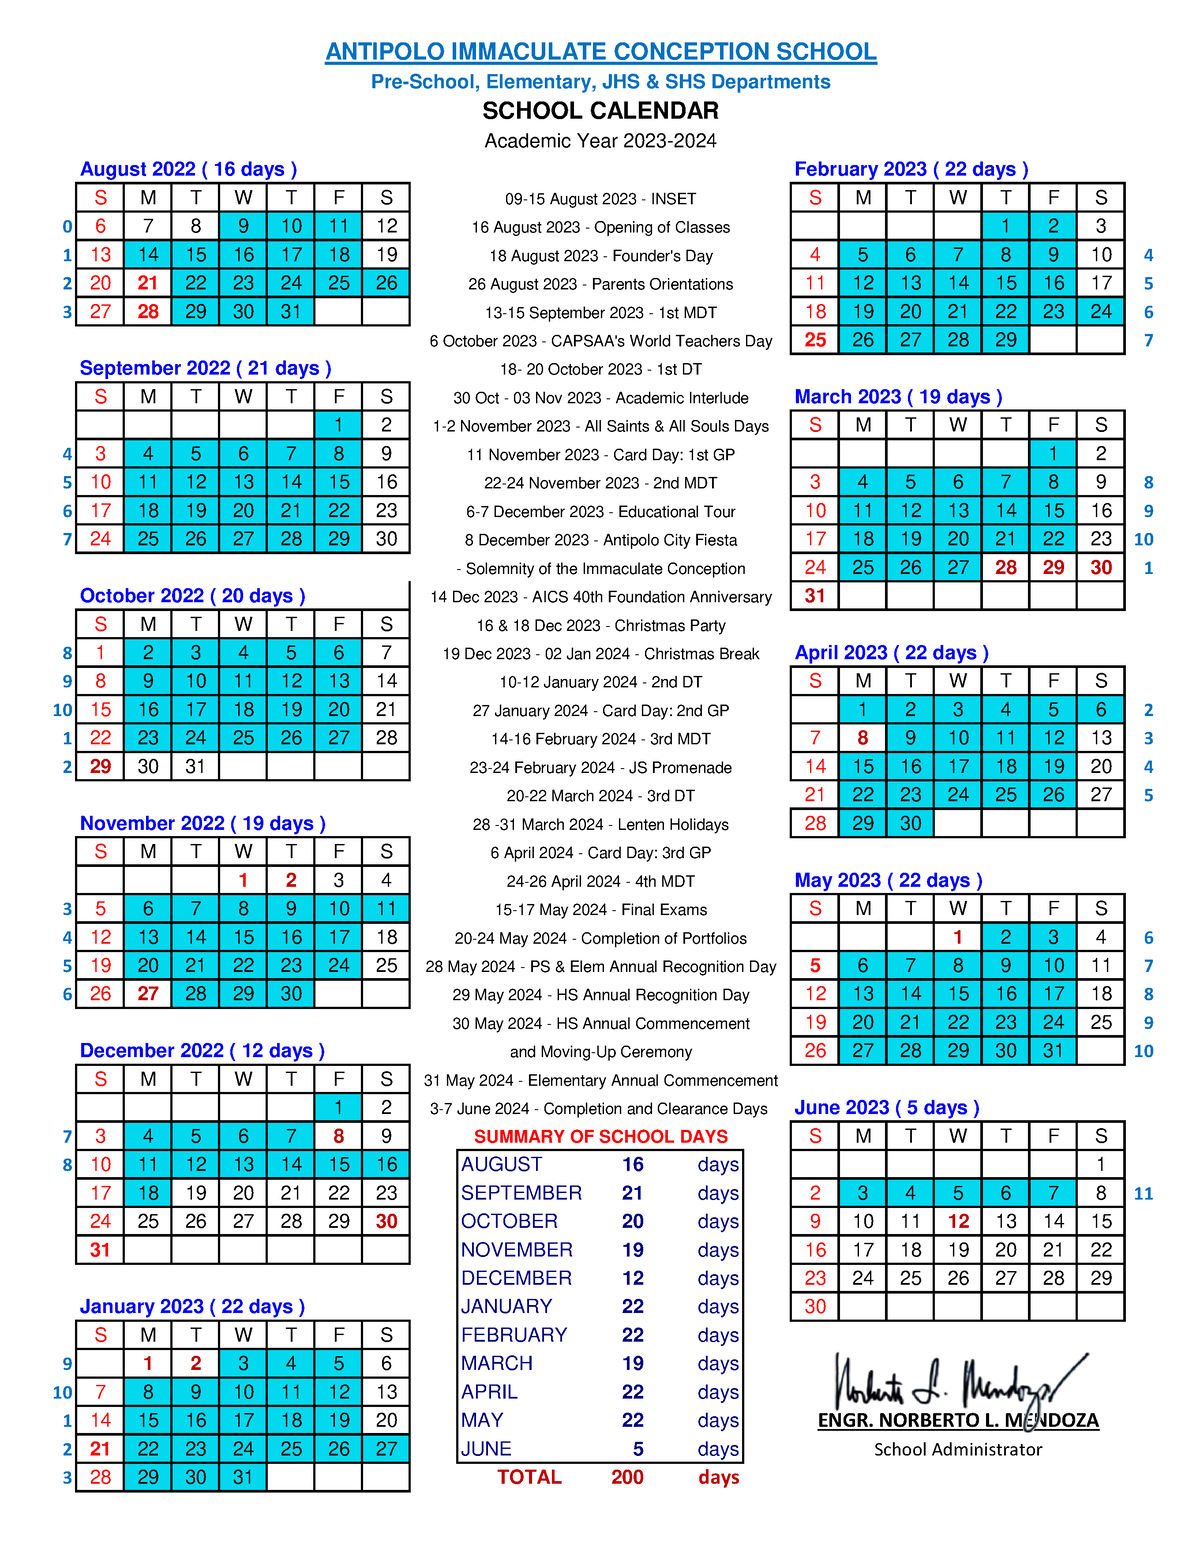 aics-school-calendar-ay2023-2024-s-m-t-w-t-f-s-s-m-t-w-t-f-s-0-6-7-8